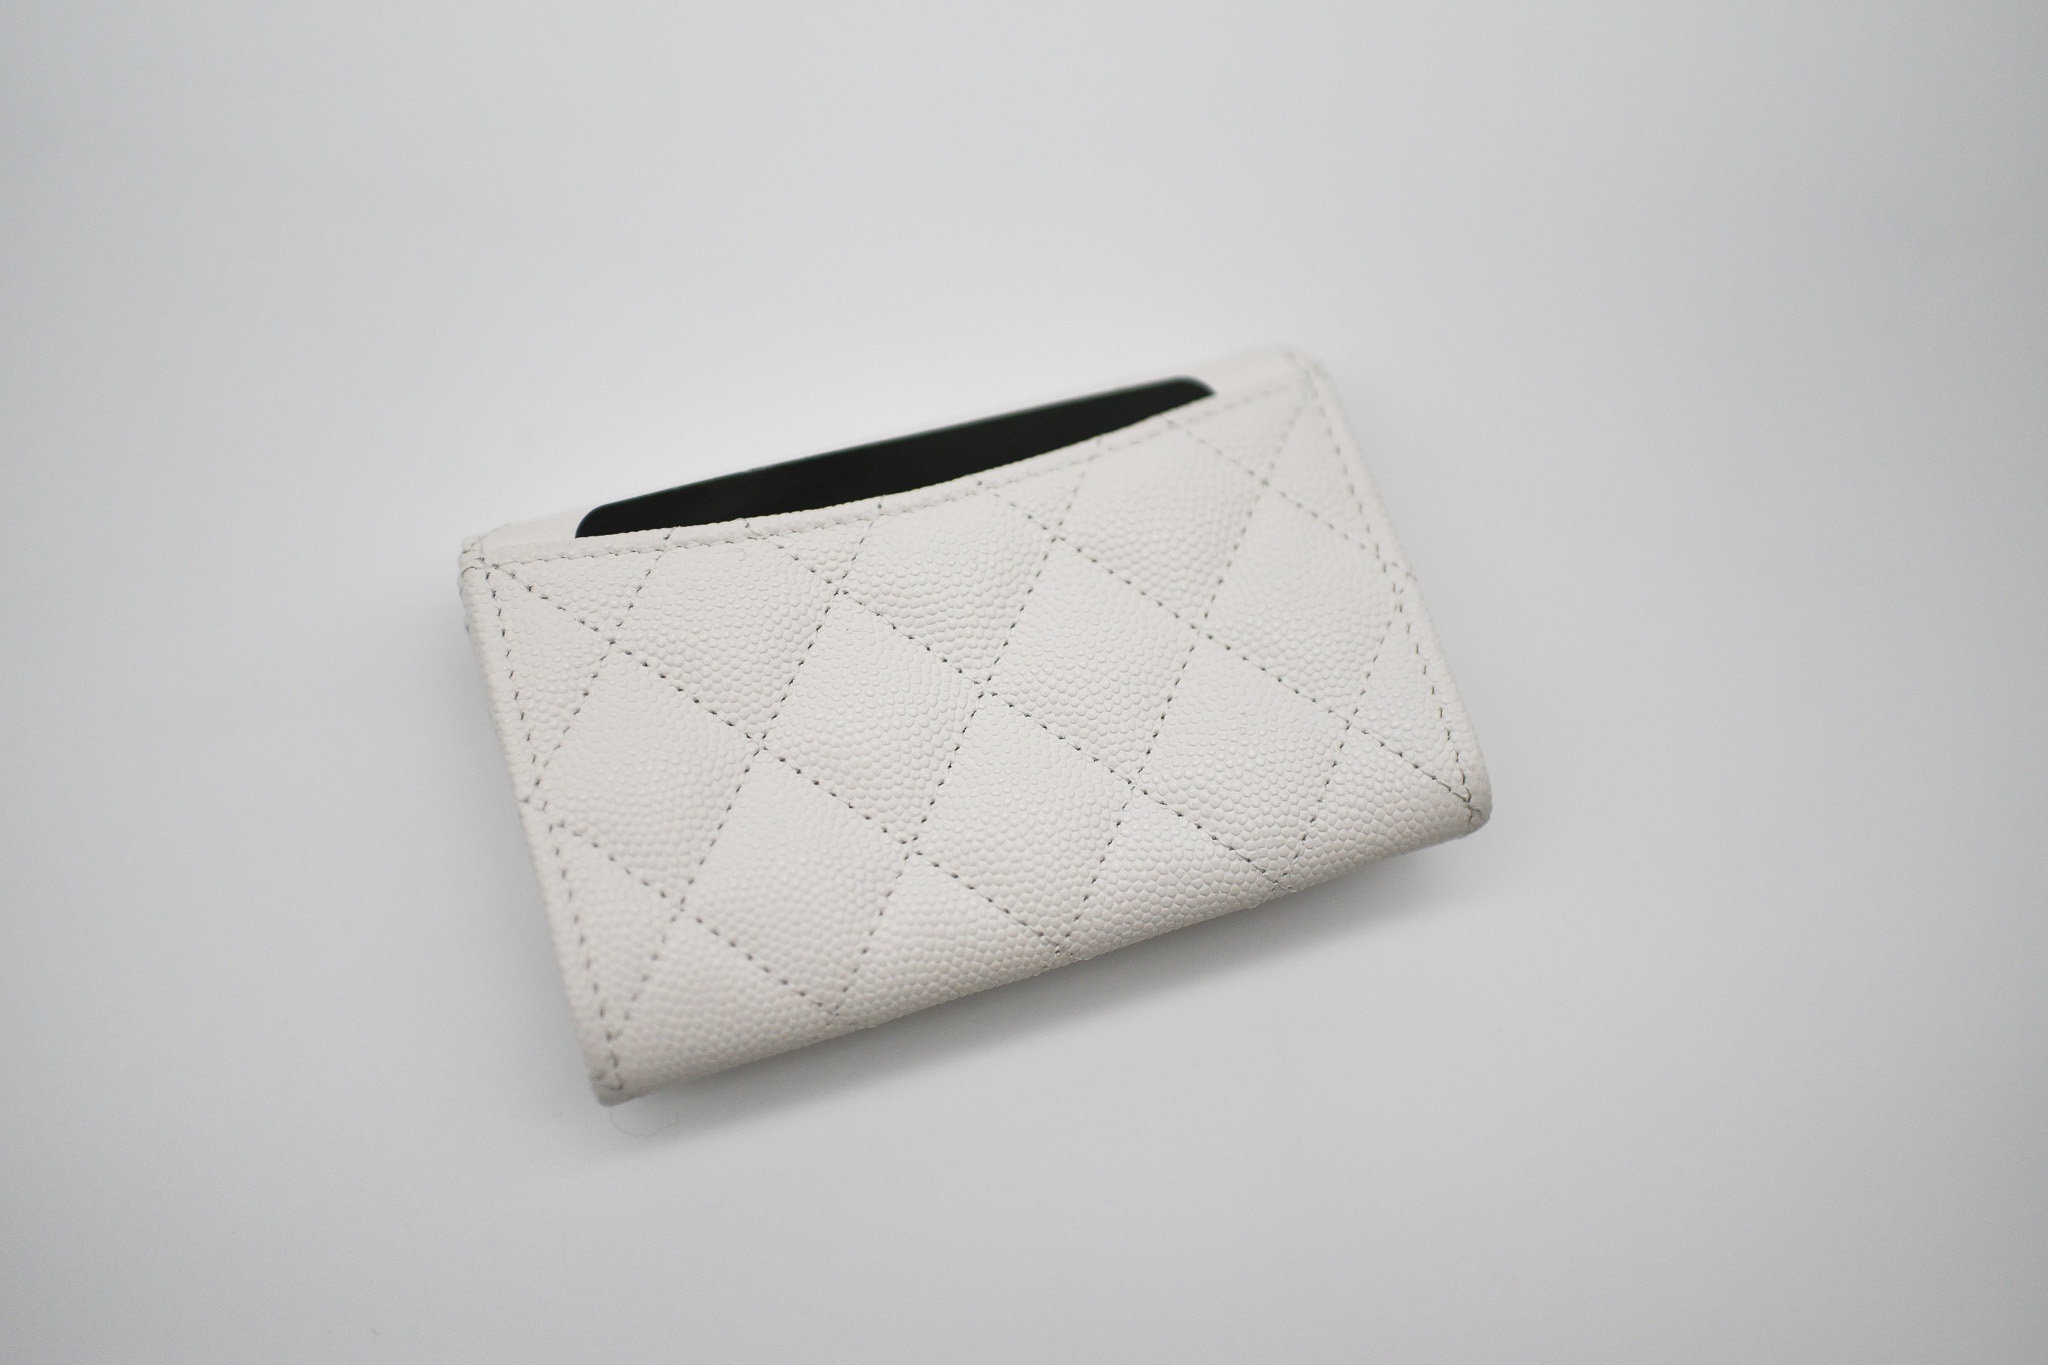 Chanel SLG Card Case, White Caviar Leather, Casino, New In Box